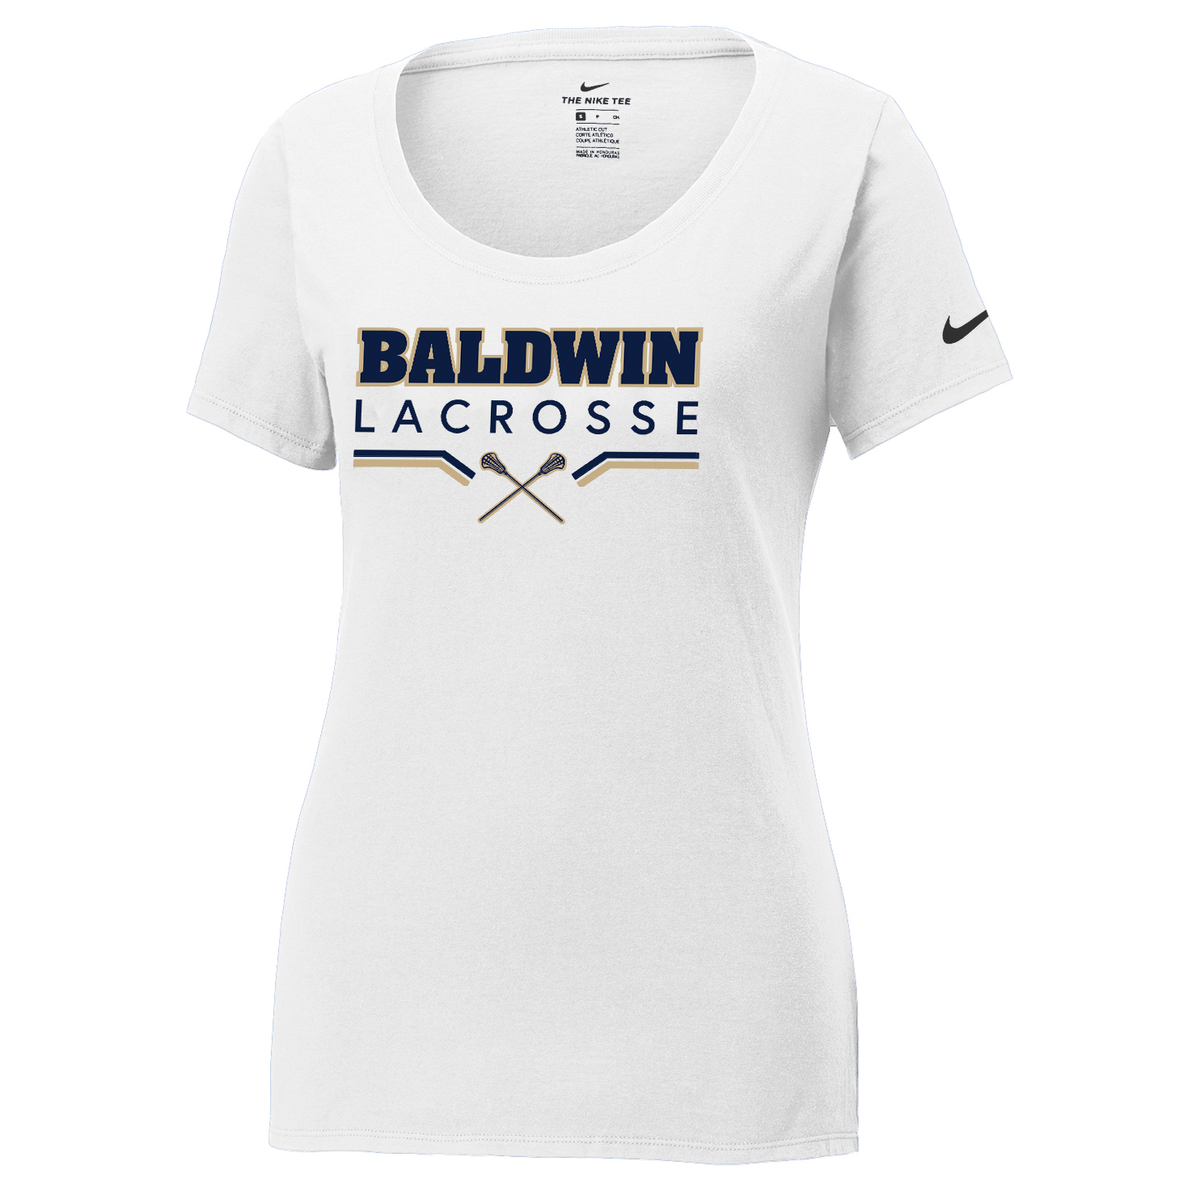 Baldwin HS Girls Lacrosse Nike Ladies Dri-FIT Tee